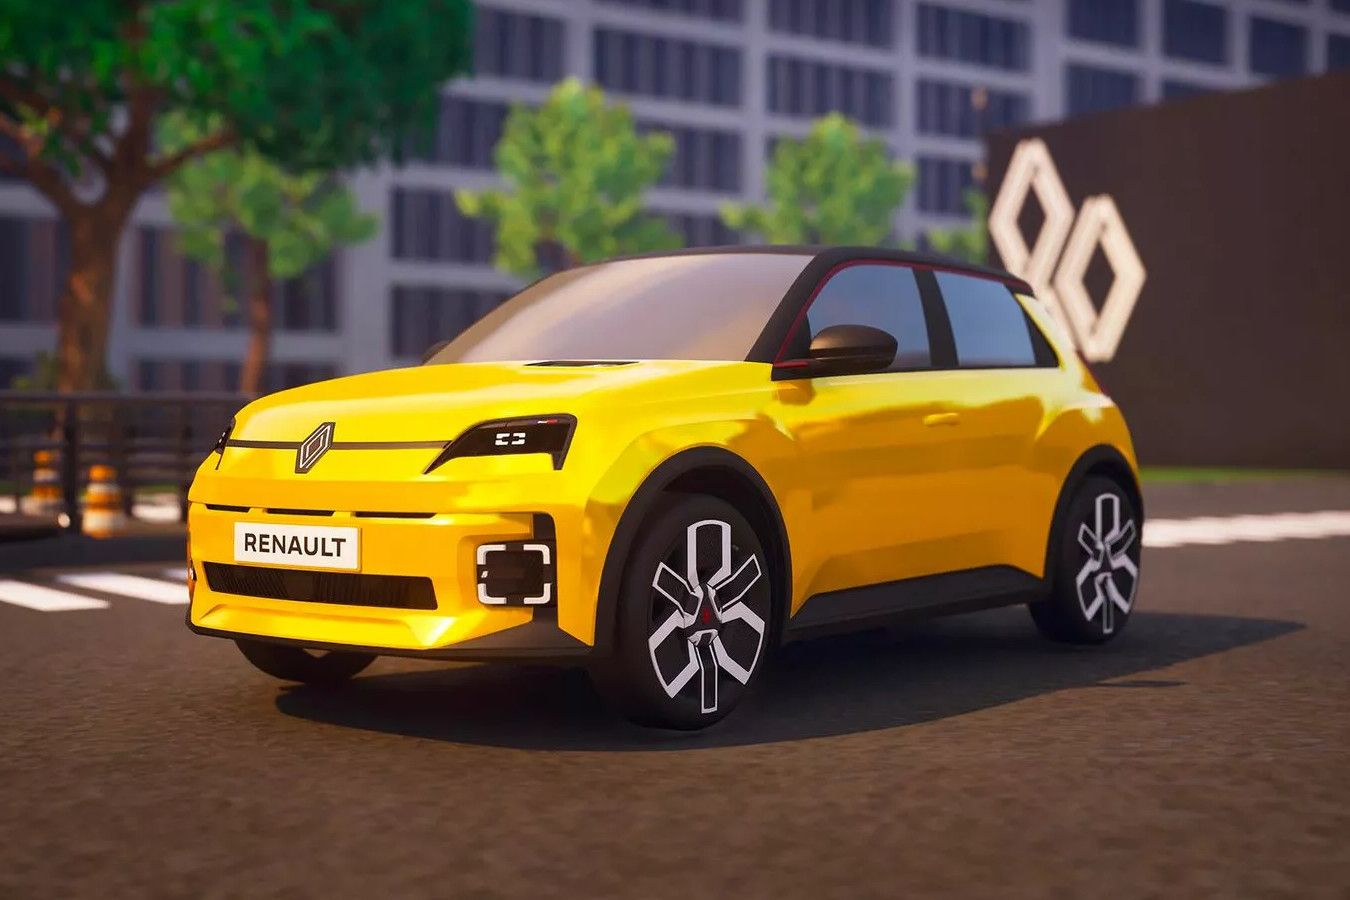 Renault создала виртуальные модели автомобиля для Minecraft, Fortnite и других игр